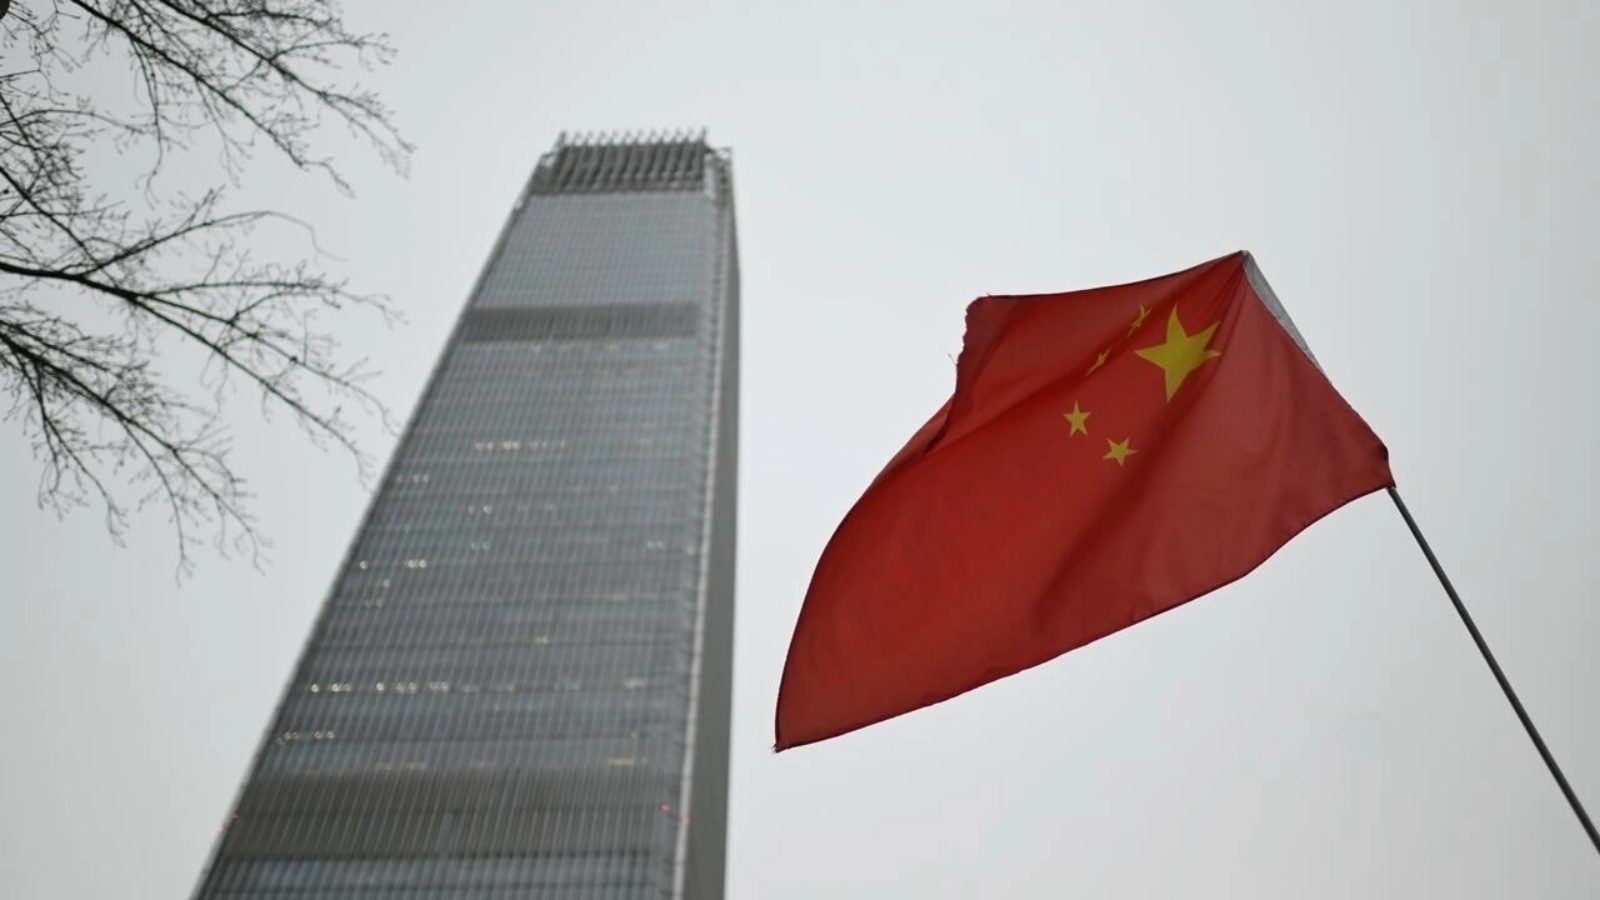 صورة مؤرخة في 29 نوفمبر 2021 تظهر علم الصين قرب أحد المباني في بكين